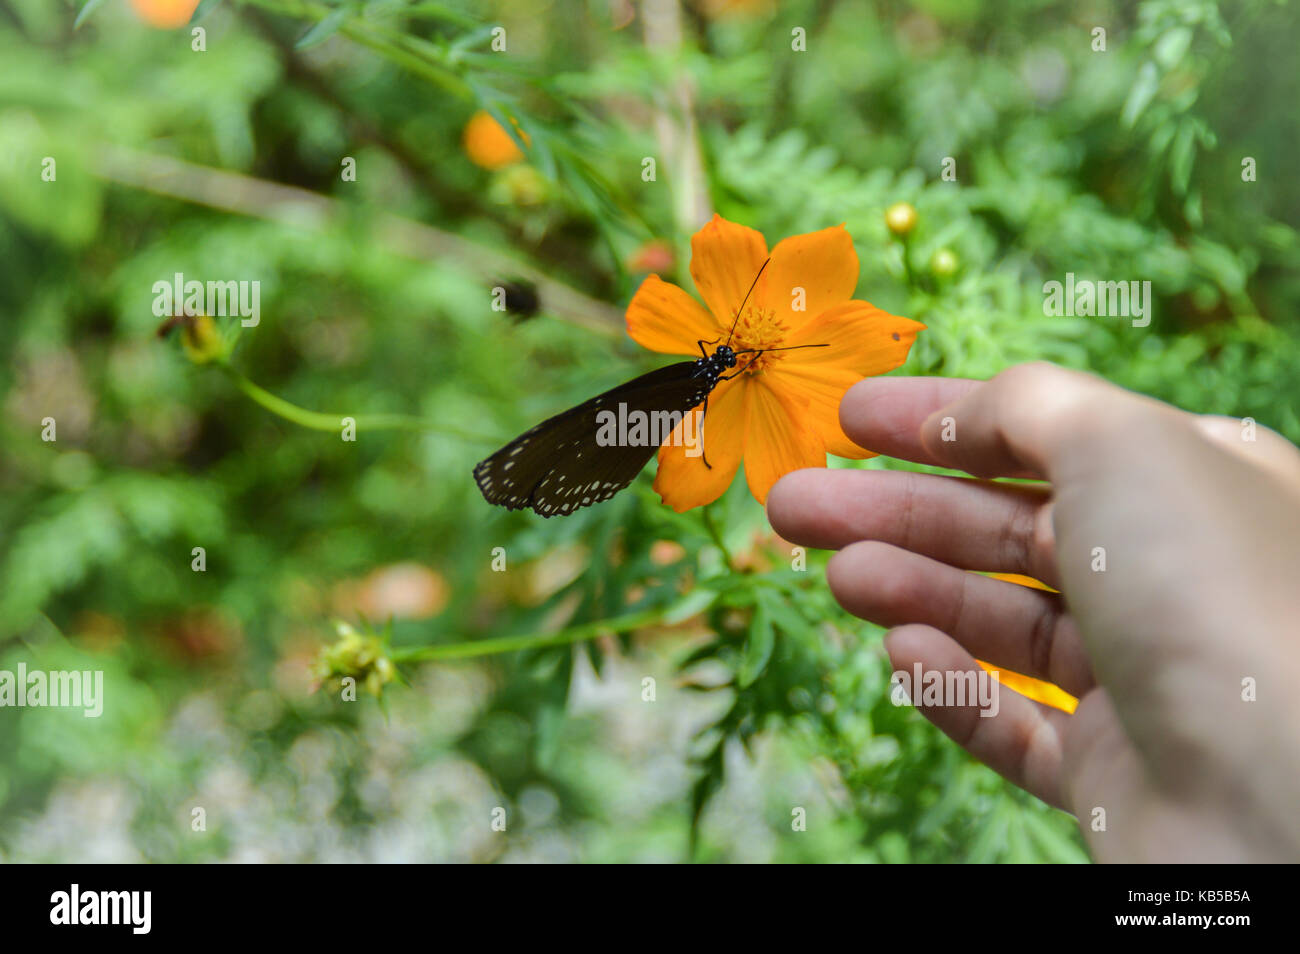 Ein Schmetterling, der auf einer Ringelblume in der Nähe einer menschlichen Hand ruht und die Harmonie von Mensch und Natur zeigt Stockfoto